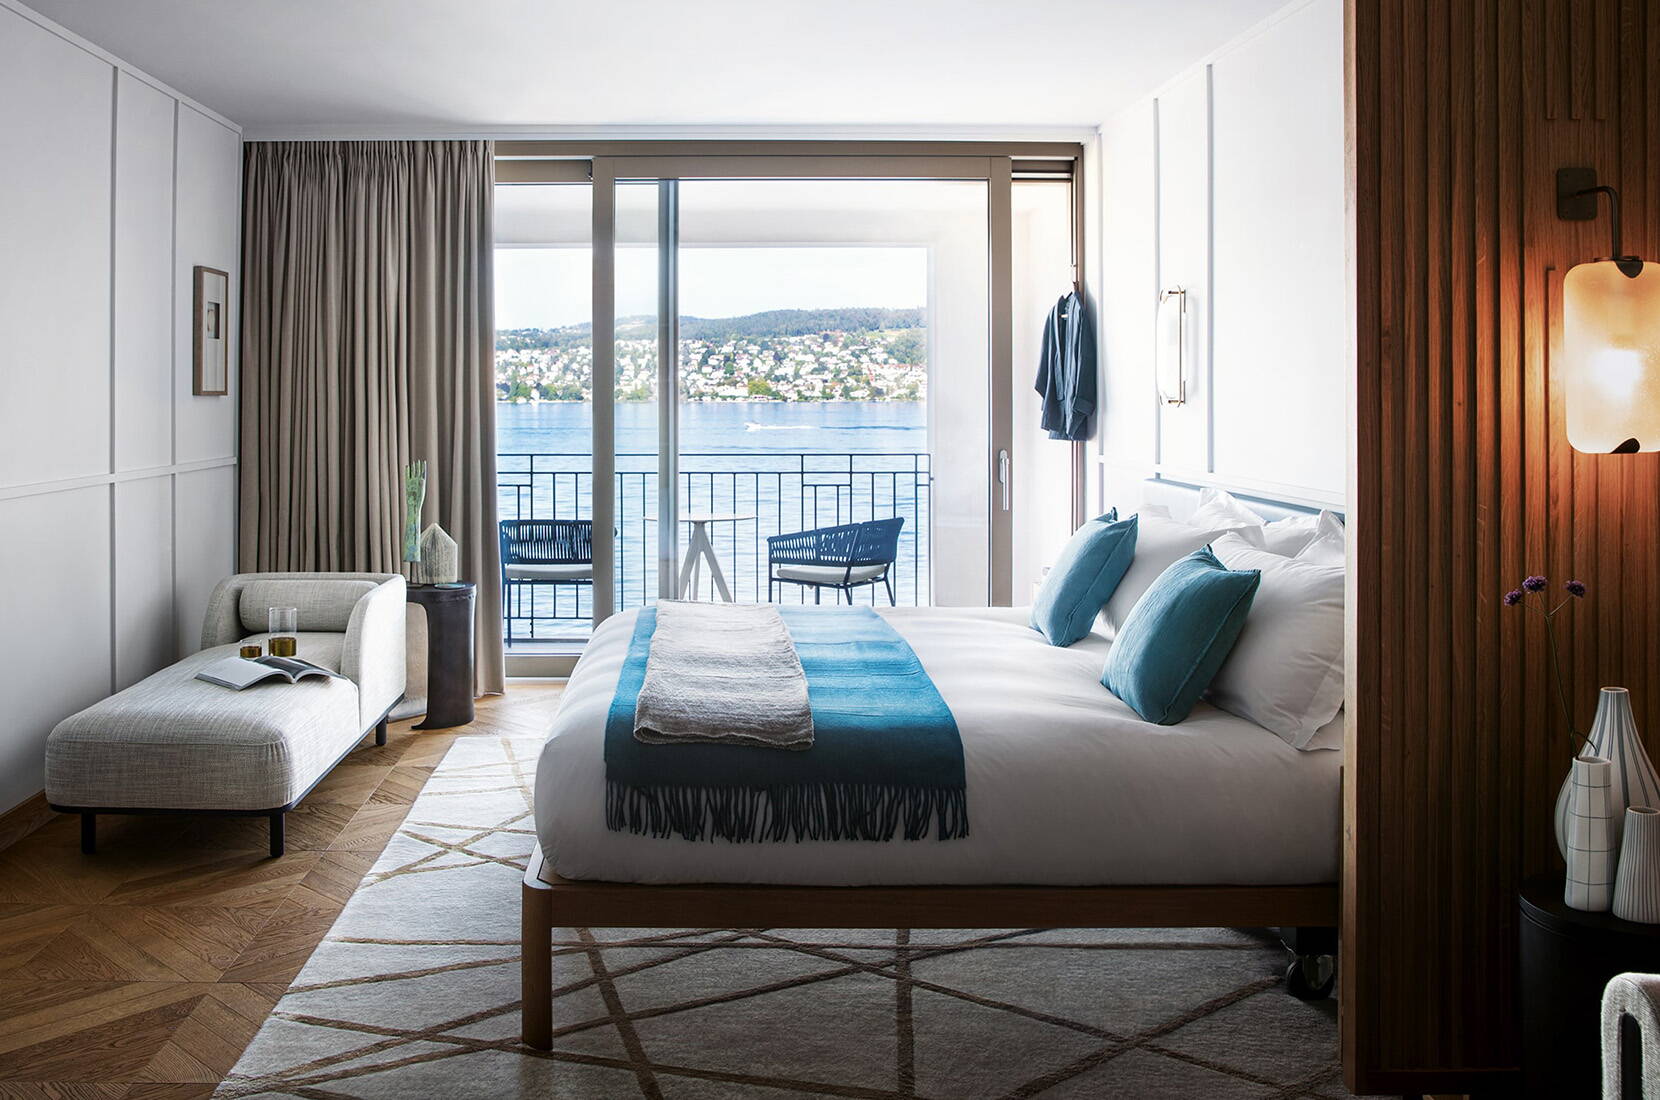 En tant que membre HotelCard, tu logeras dans plus de 500 hôtels en Suisse et dans les pays voisins avec une réduction allant jusqu'à 50 %. Du confortable chalet alpin dans les Grisons au complexe hôtelier 5 étoiles au bord du lac Léman, il y a de quoi satisfaire tous les désirs de voyage.